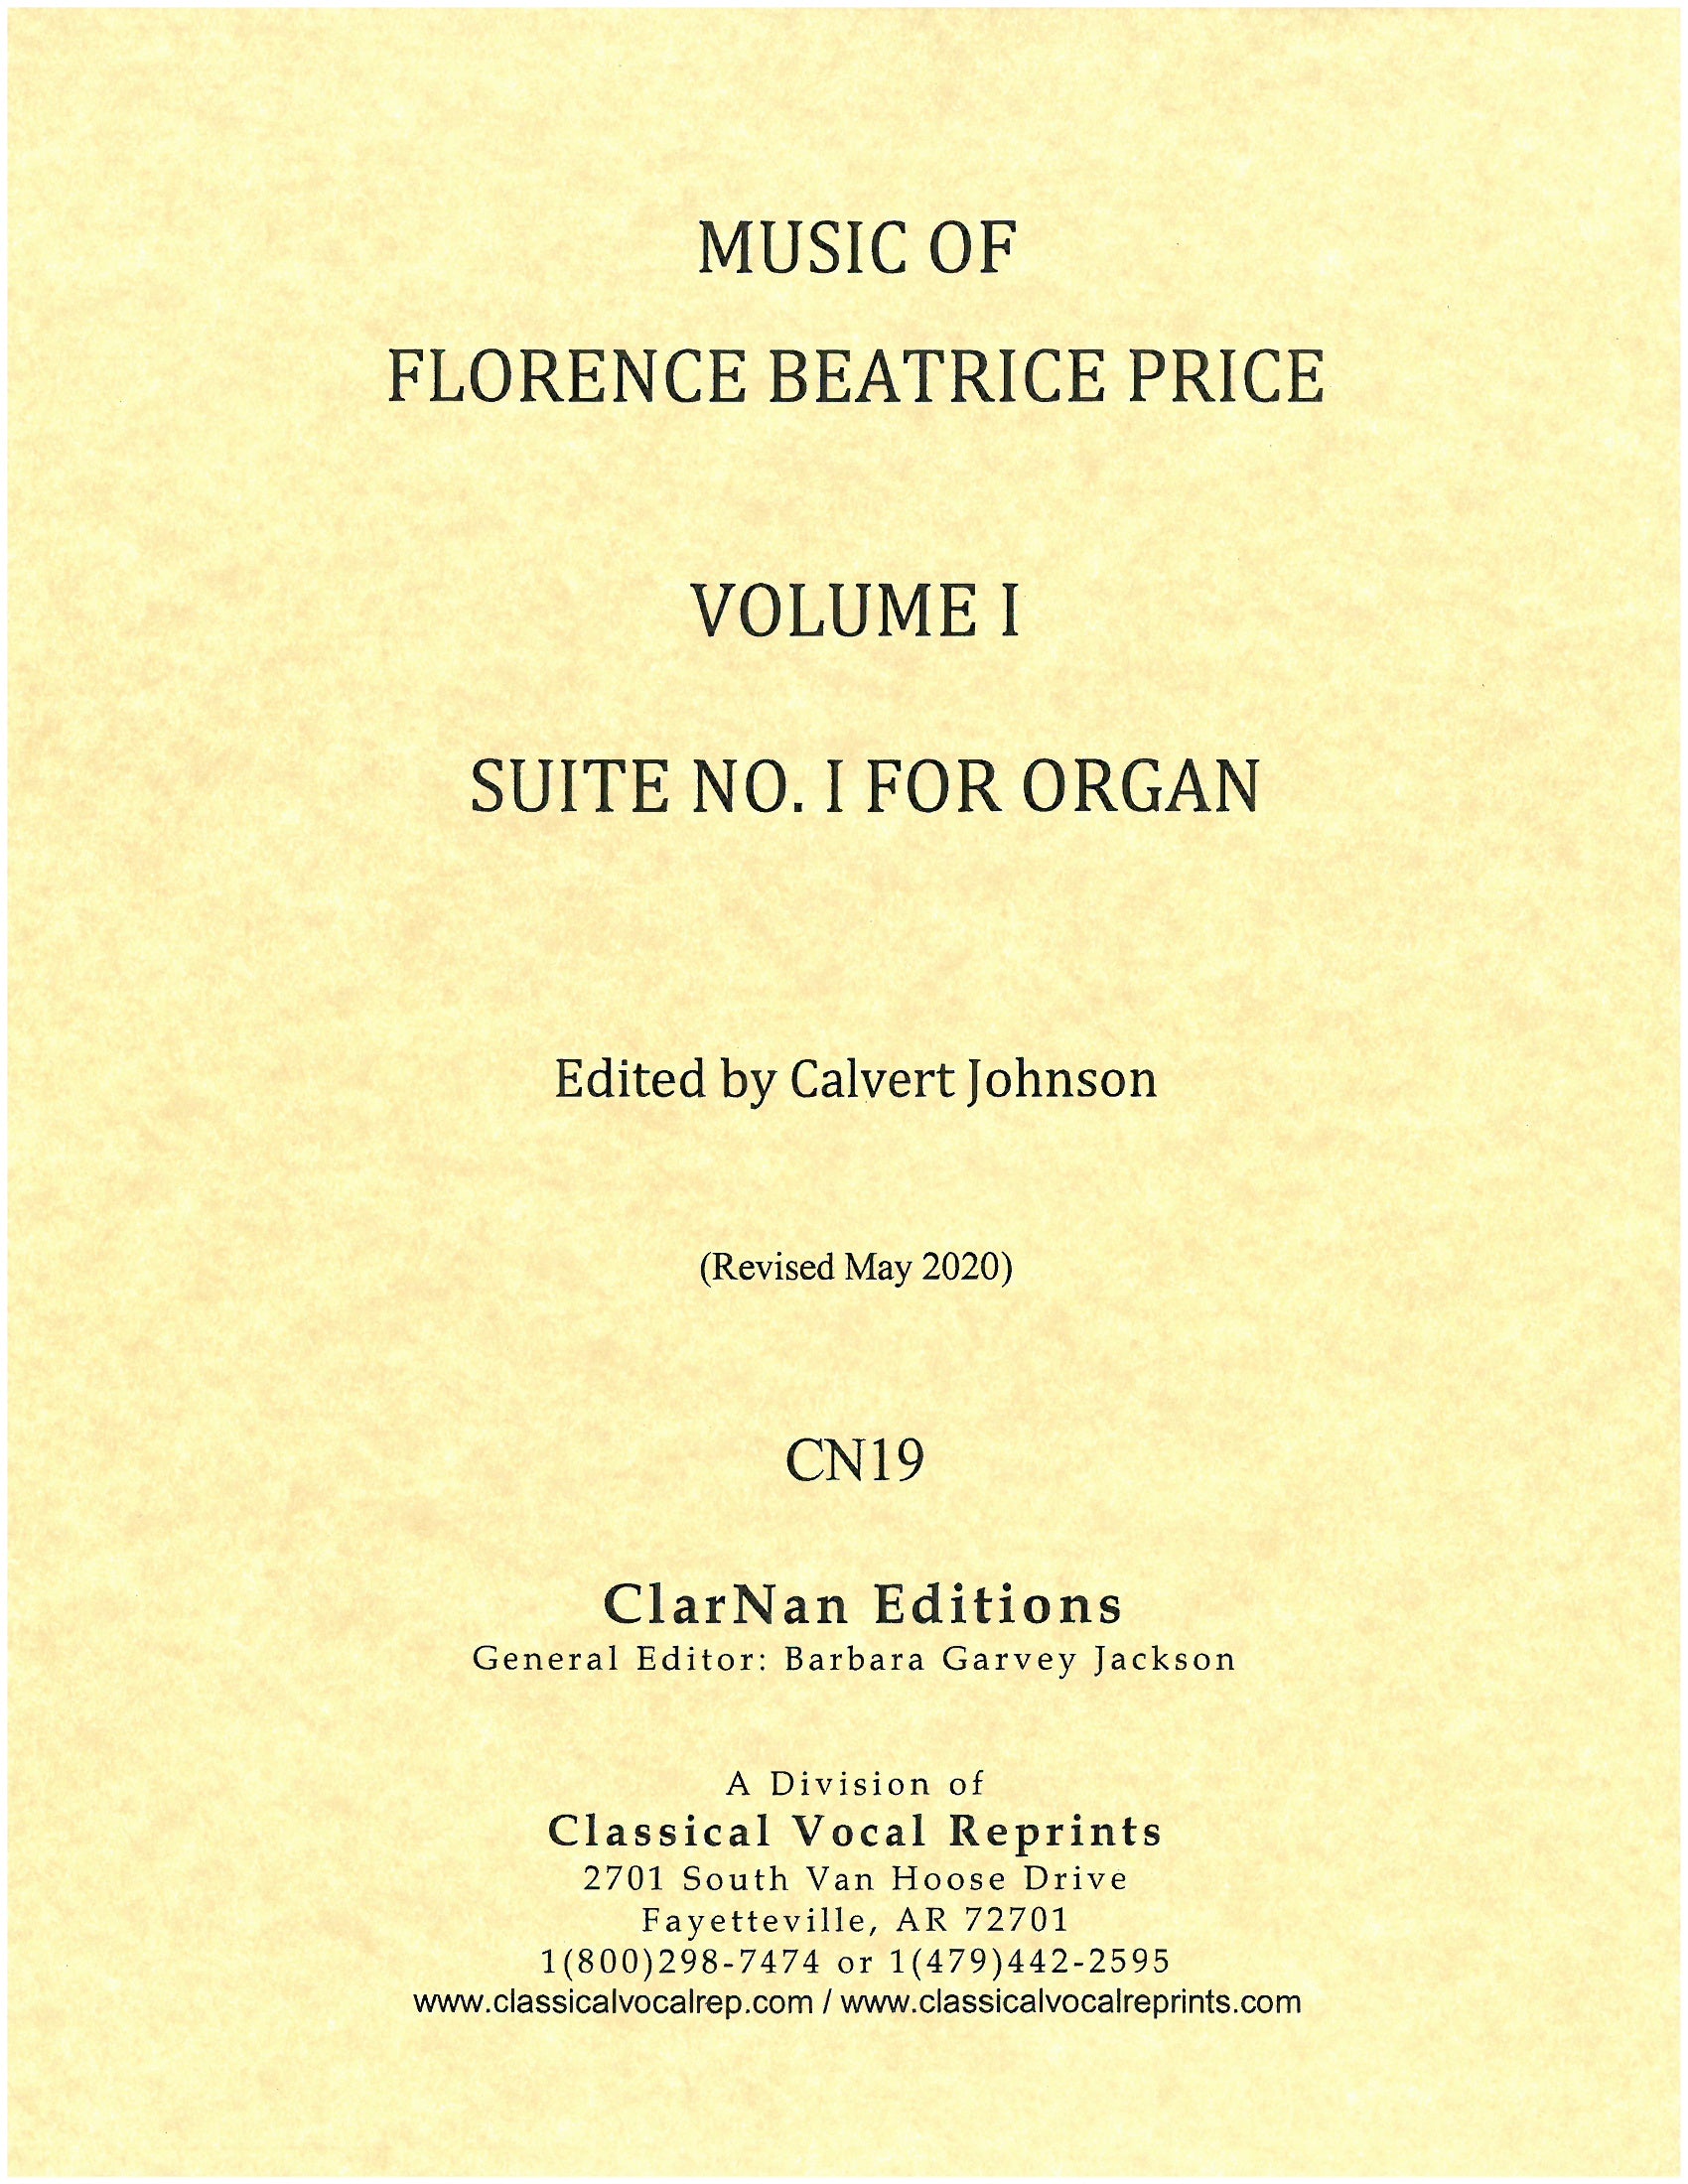 Price: Suite No. 1 for Organ